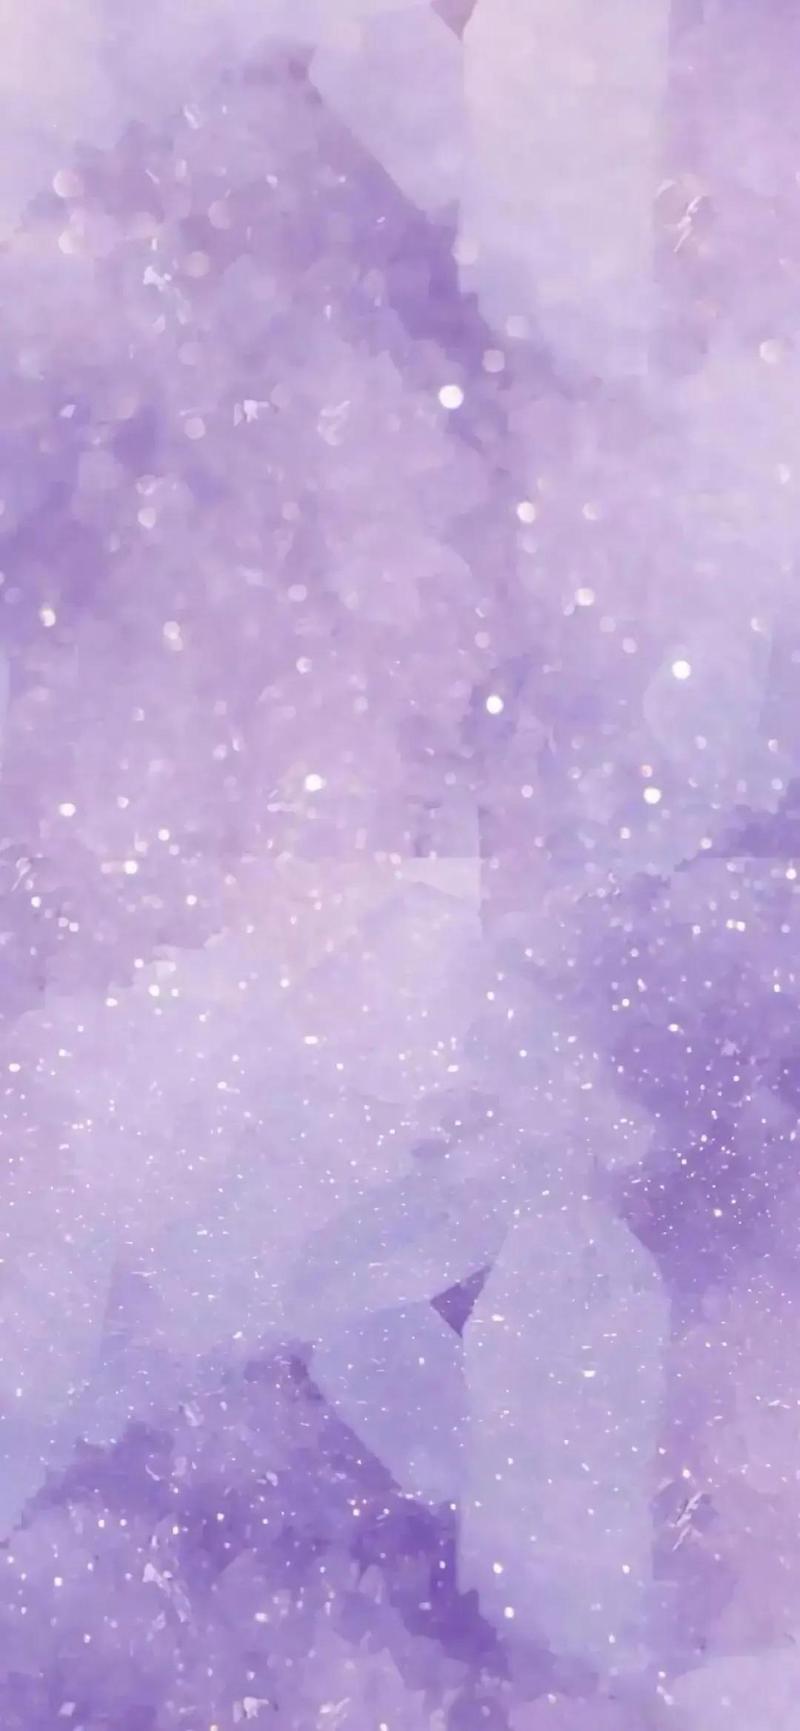 浪漫紫色系列壁纸,如果你对紫色情有独钟,那就千万不要错过哦